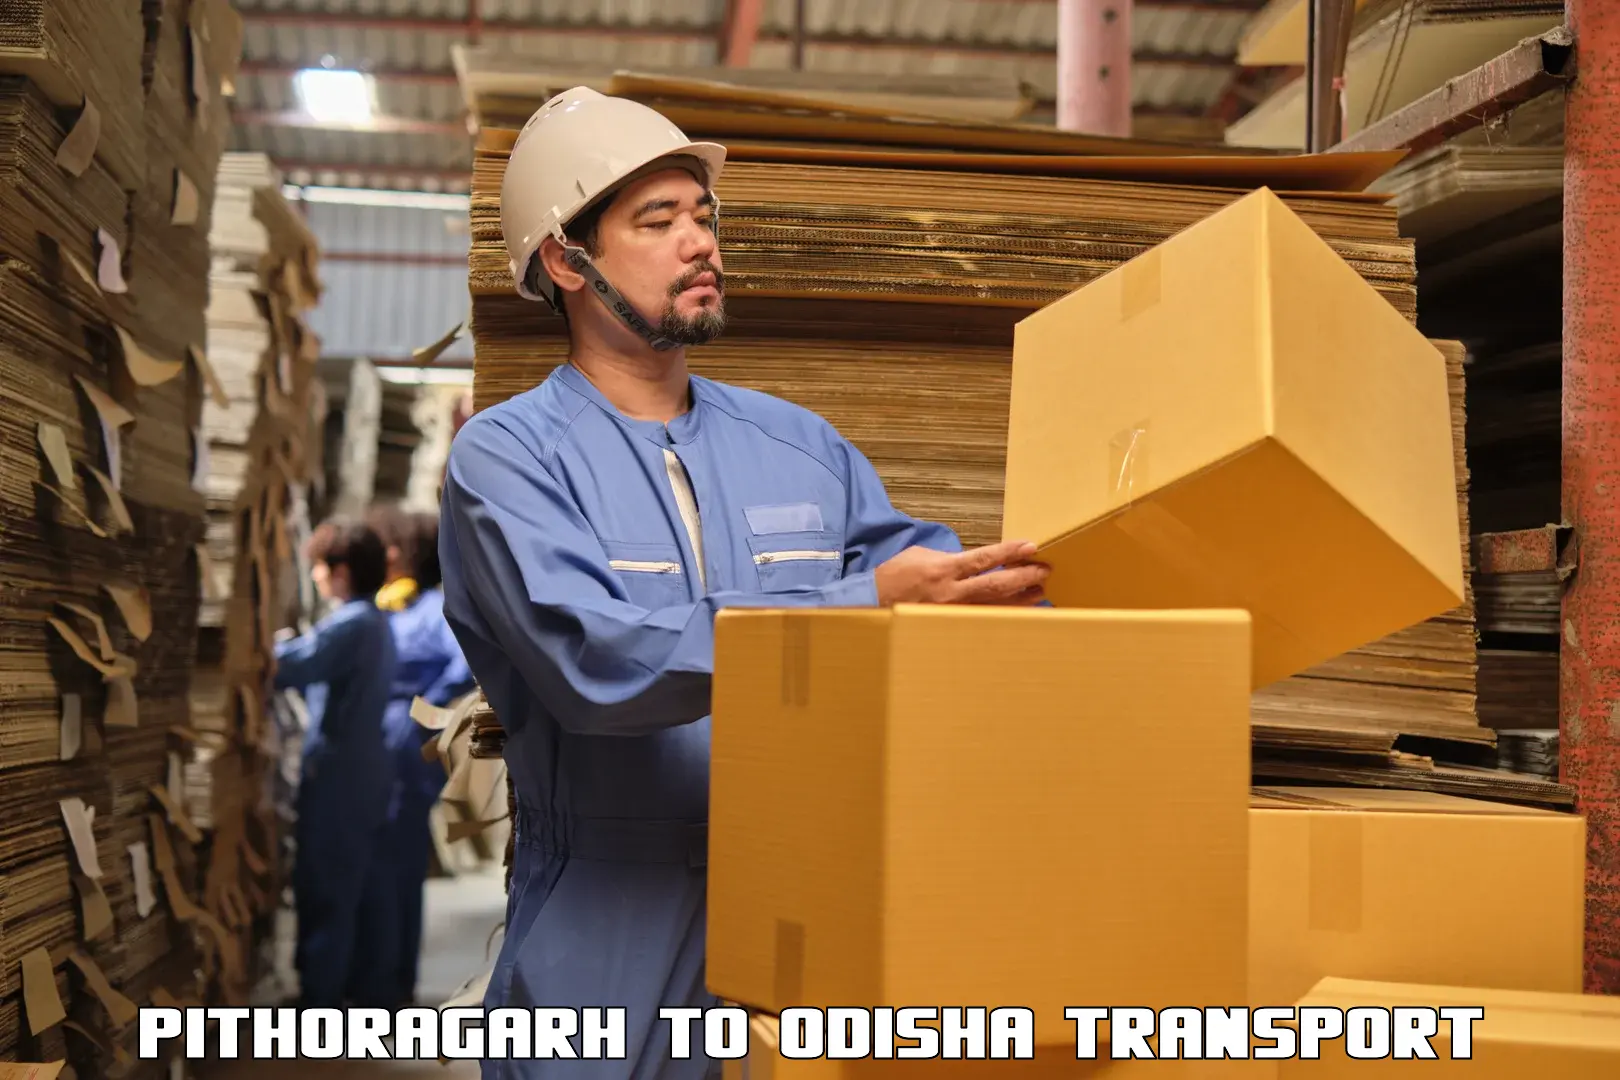 Furniture transport service Pithoragarh to Dhamanagar